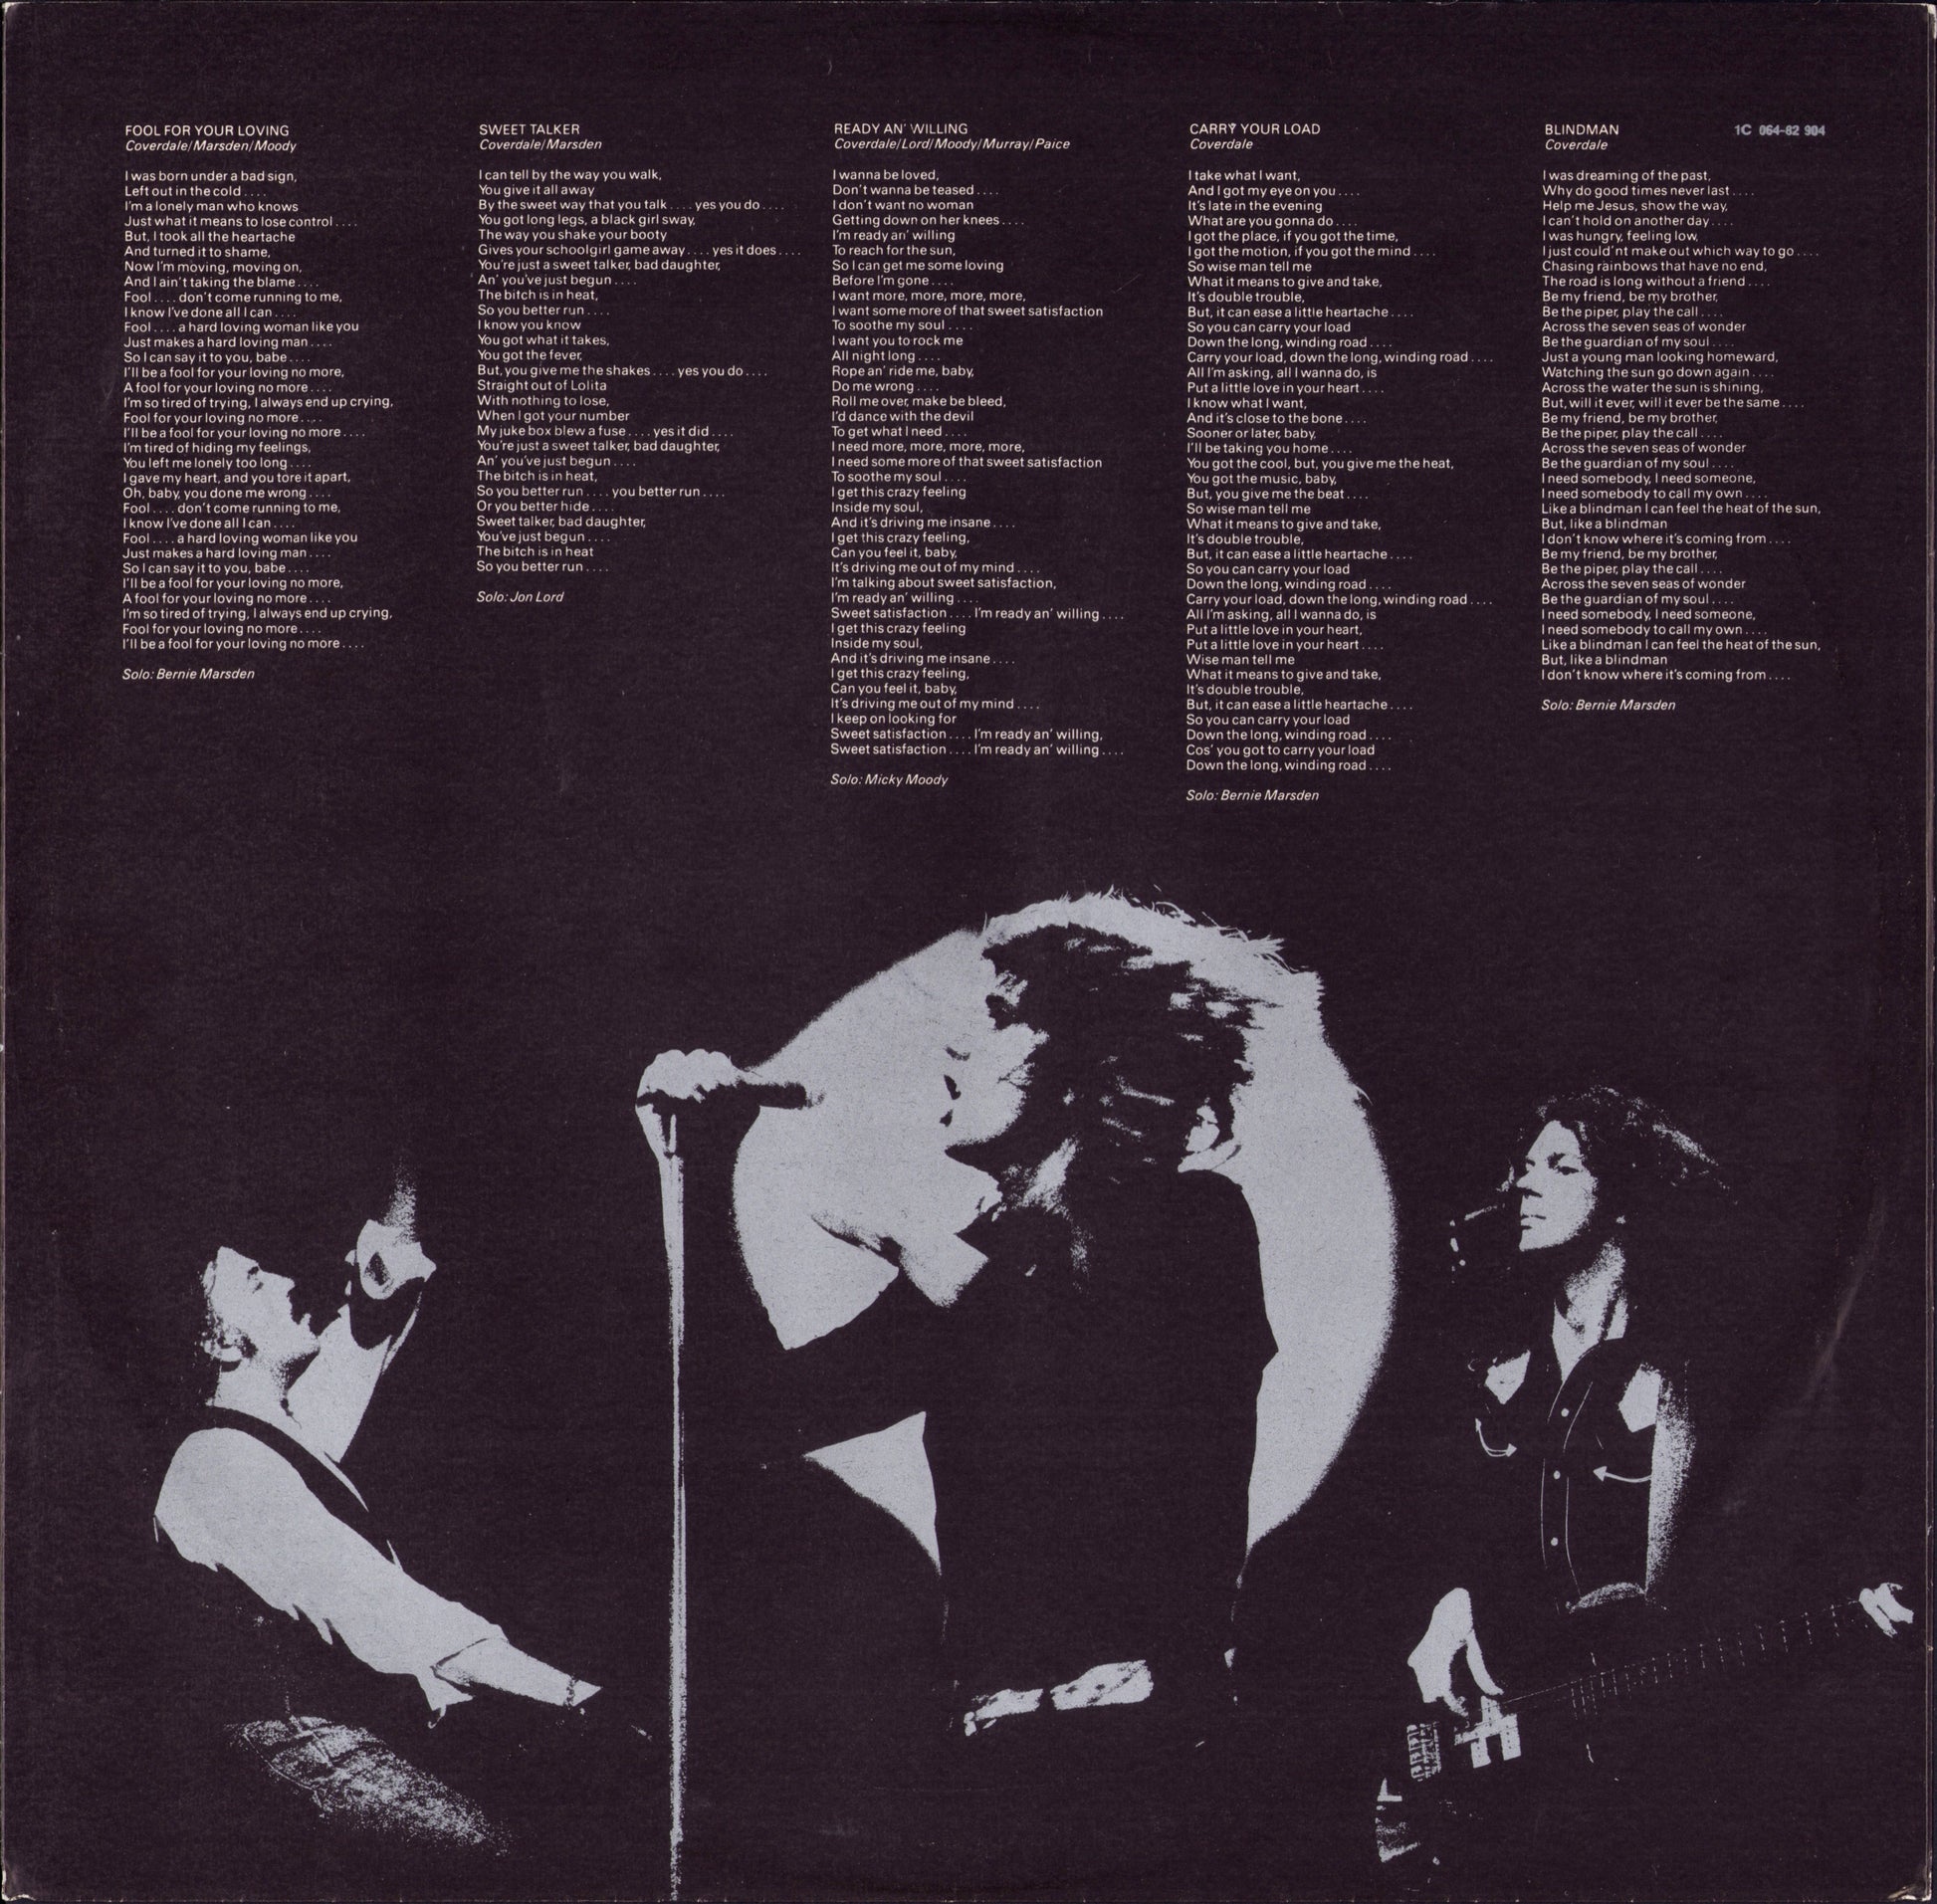 Whitesnake - Ready An' Willing Vinyl LP